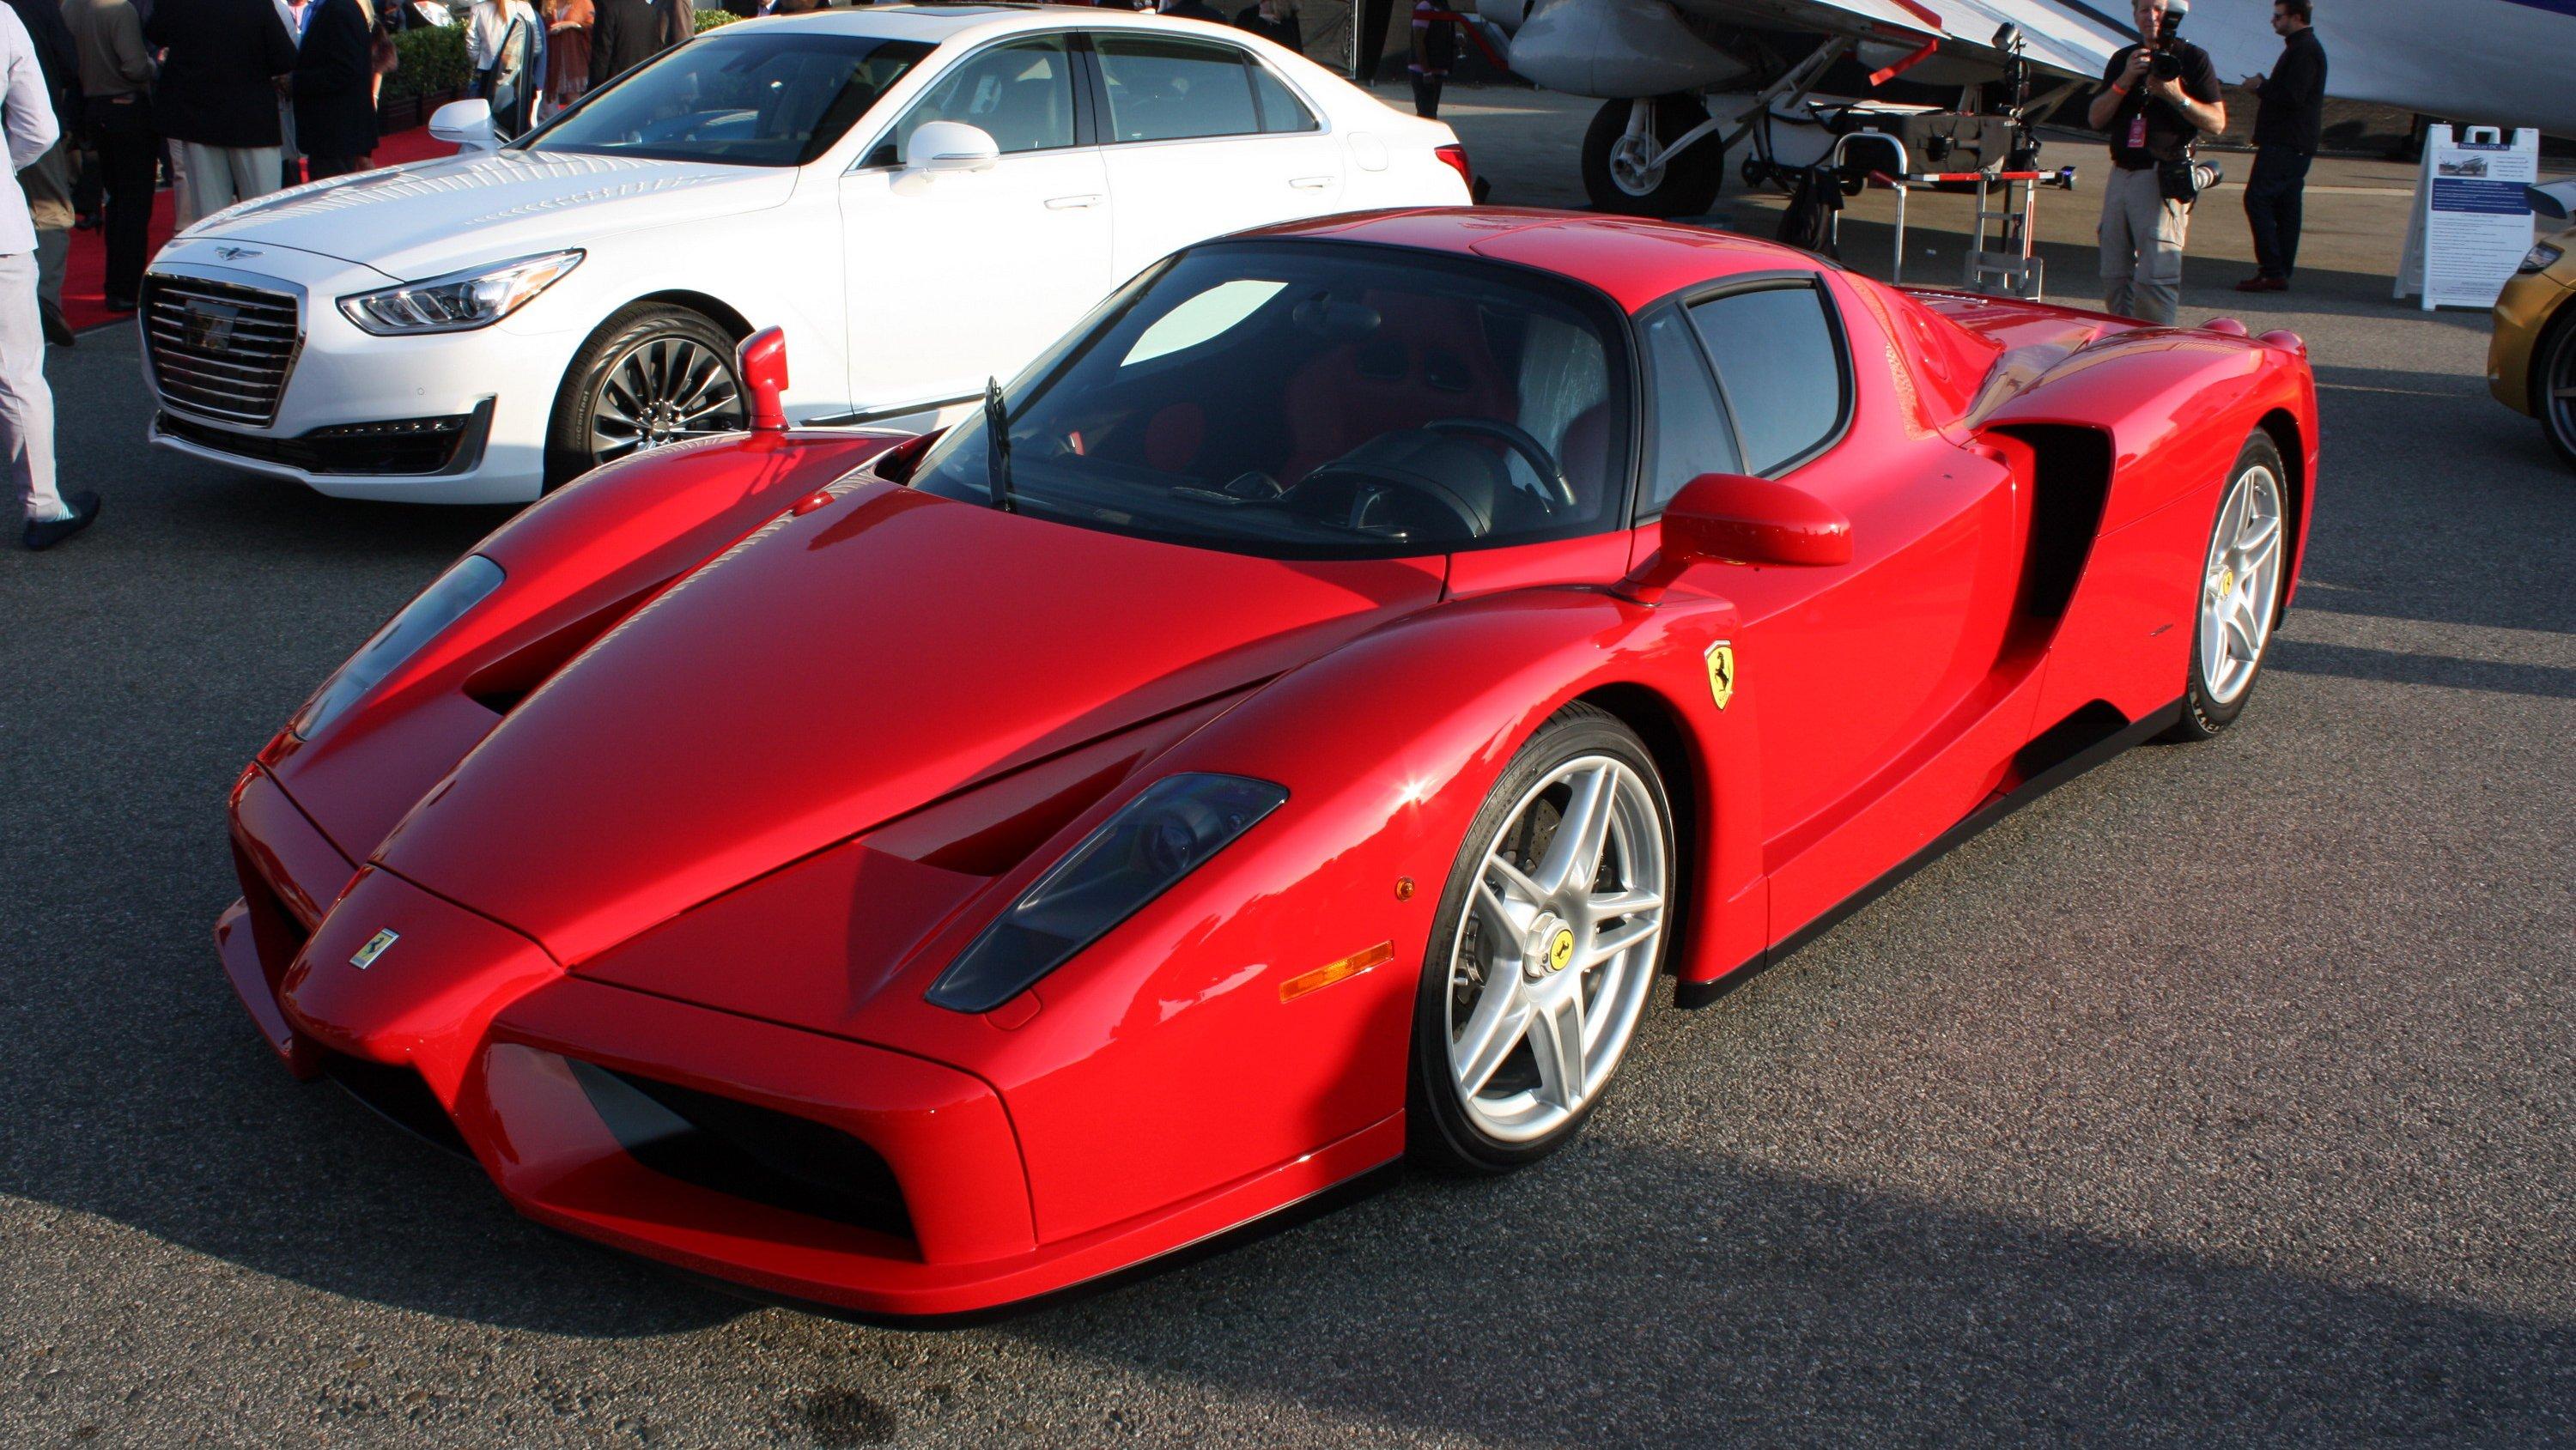 Ferrari Enzo Picture.co